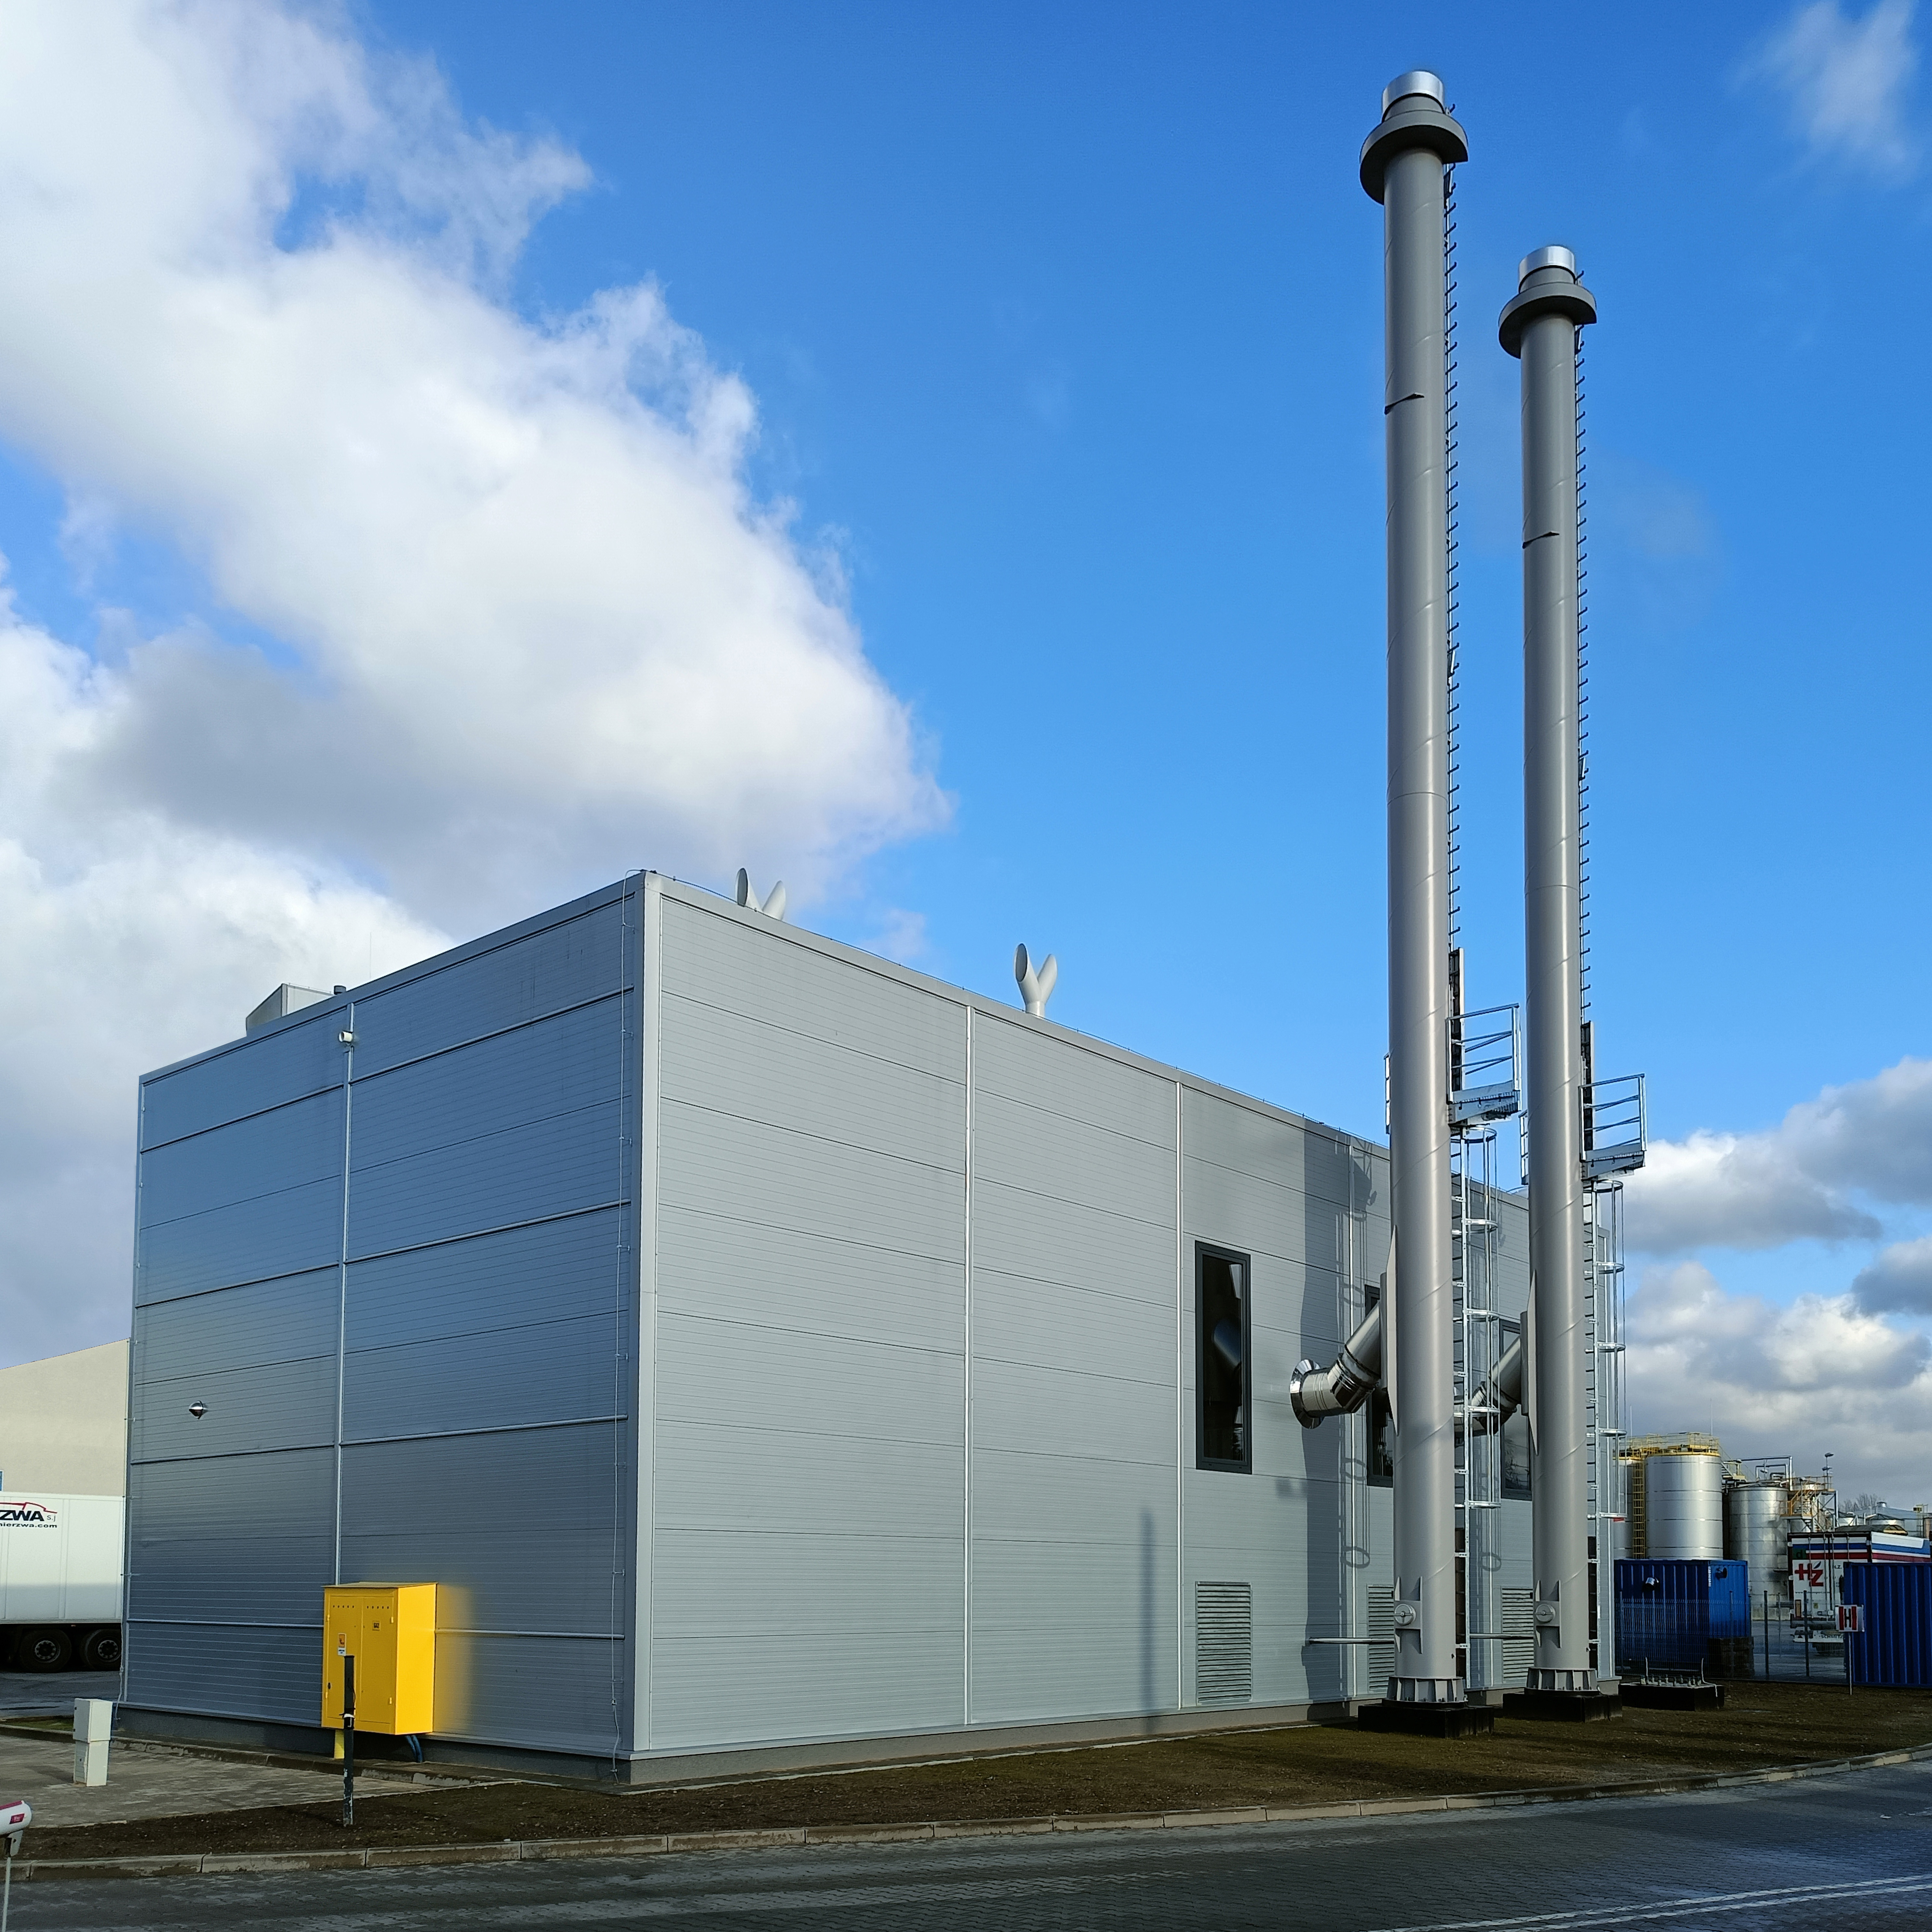 Wydajnie i ekologicznie – Dalkia zakończyła pierwszy etap transformacji energetycznej zakładu Upfield Katowice